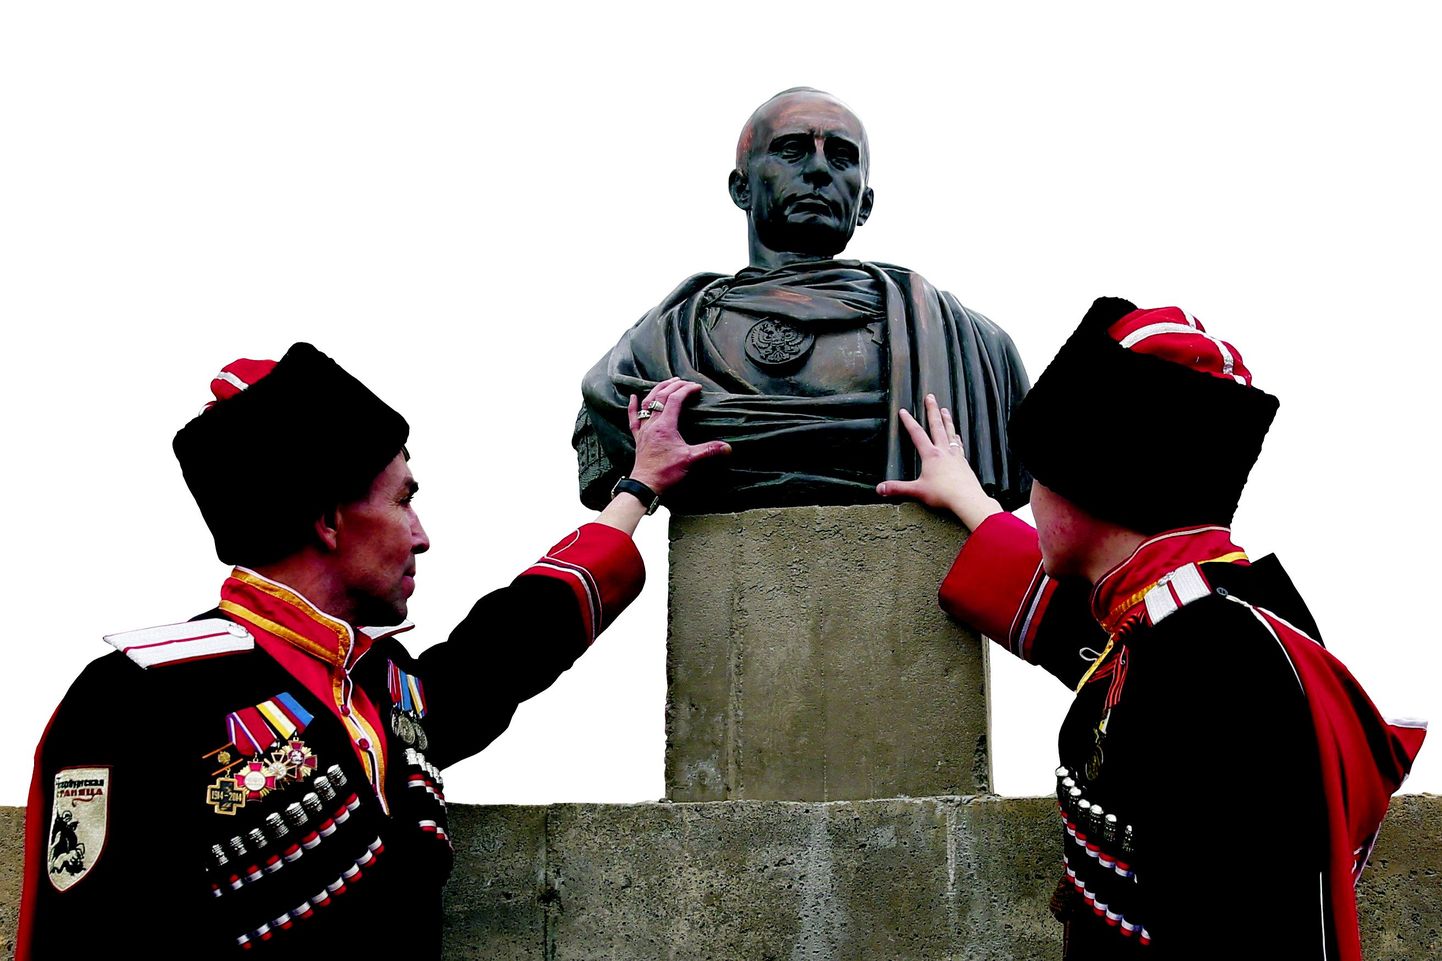 Tänavu 16. mail avasid Leningradi piirkonna kasakad monumendi, mis kujutab Venemaa presidenti Vladimir Putinit Rooma imperaatorina.